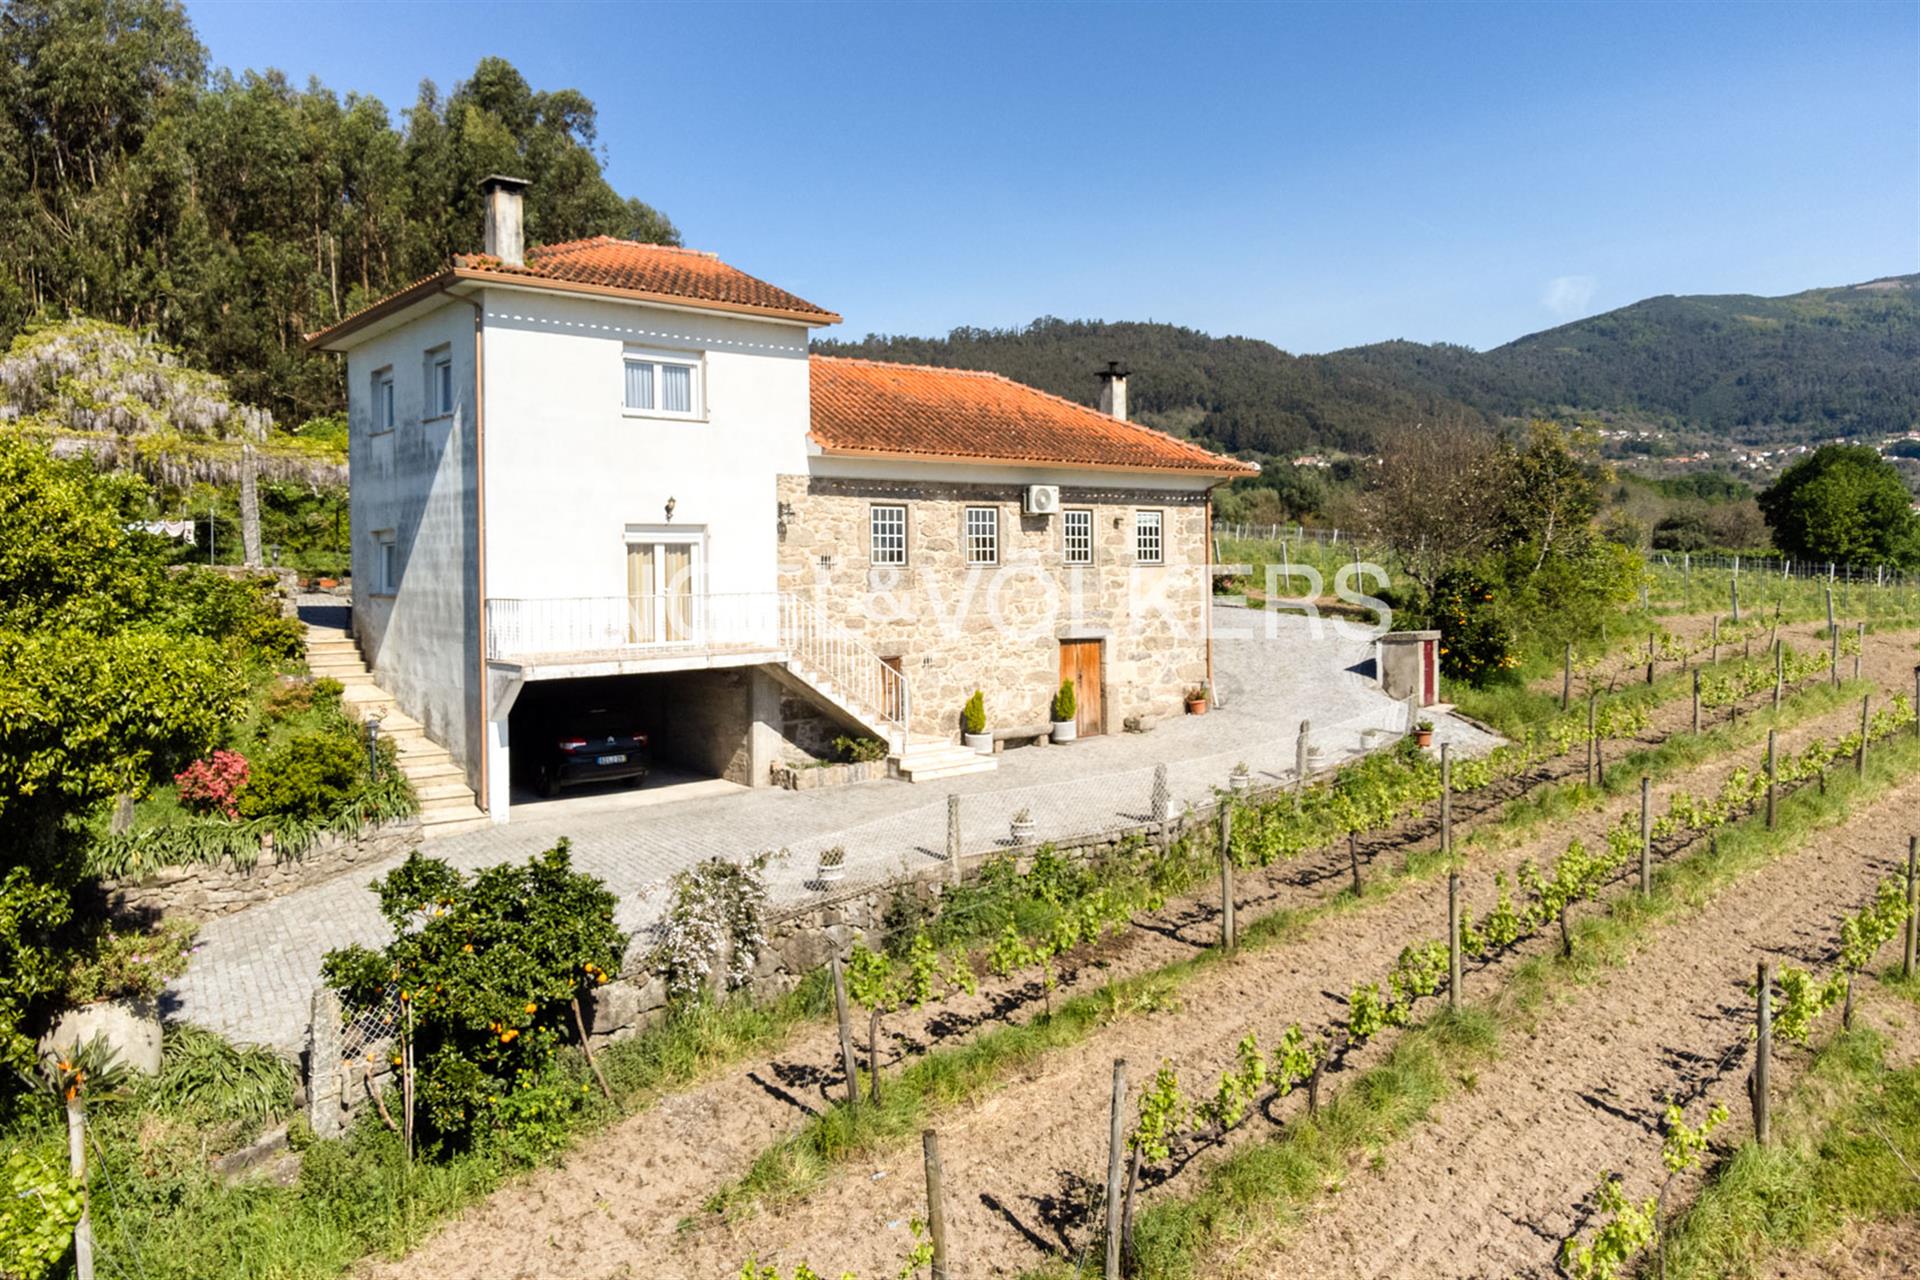 Huisje met drie hectare wijngaard